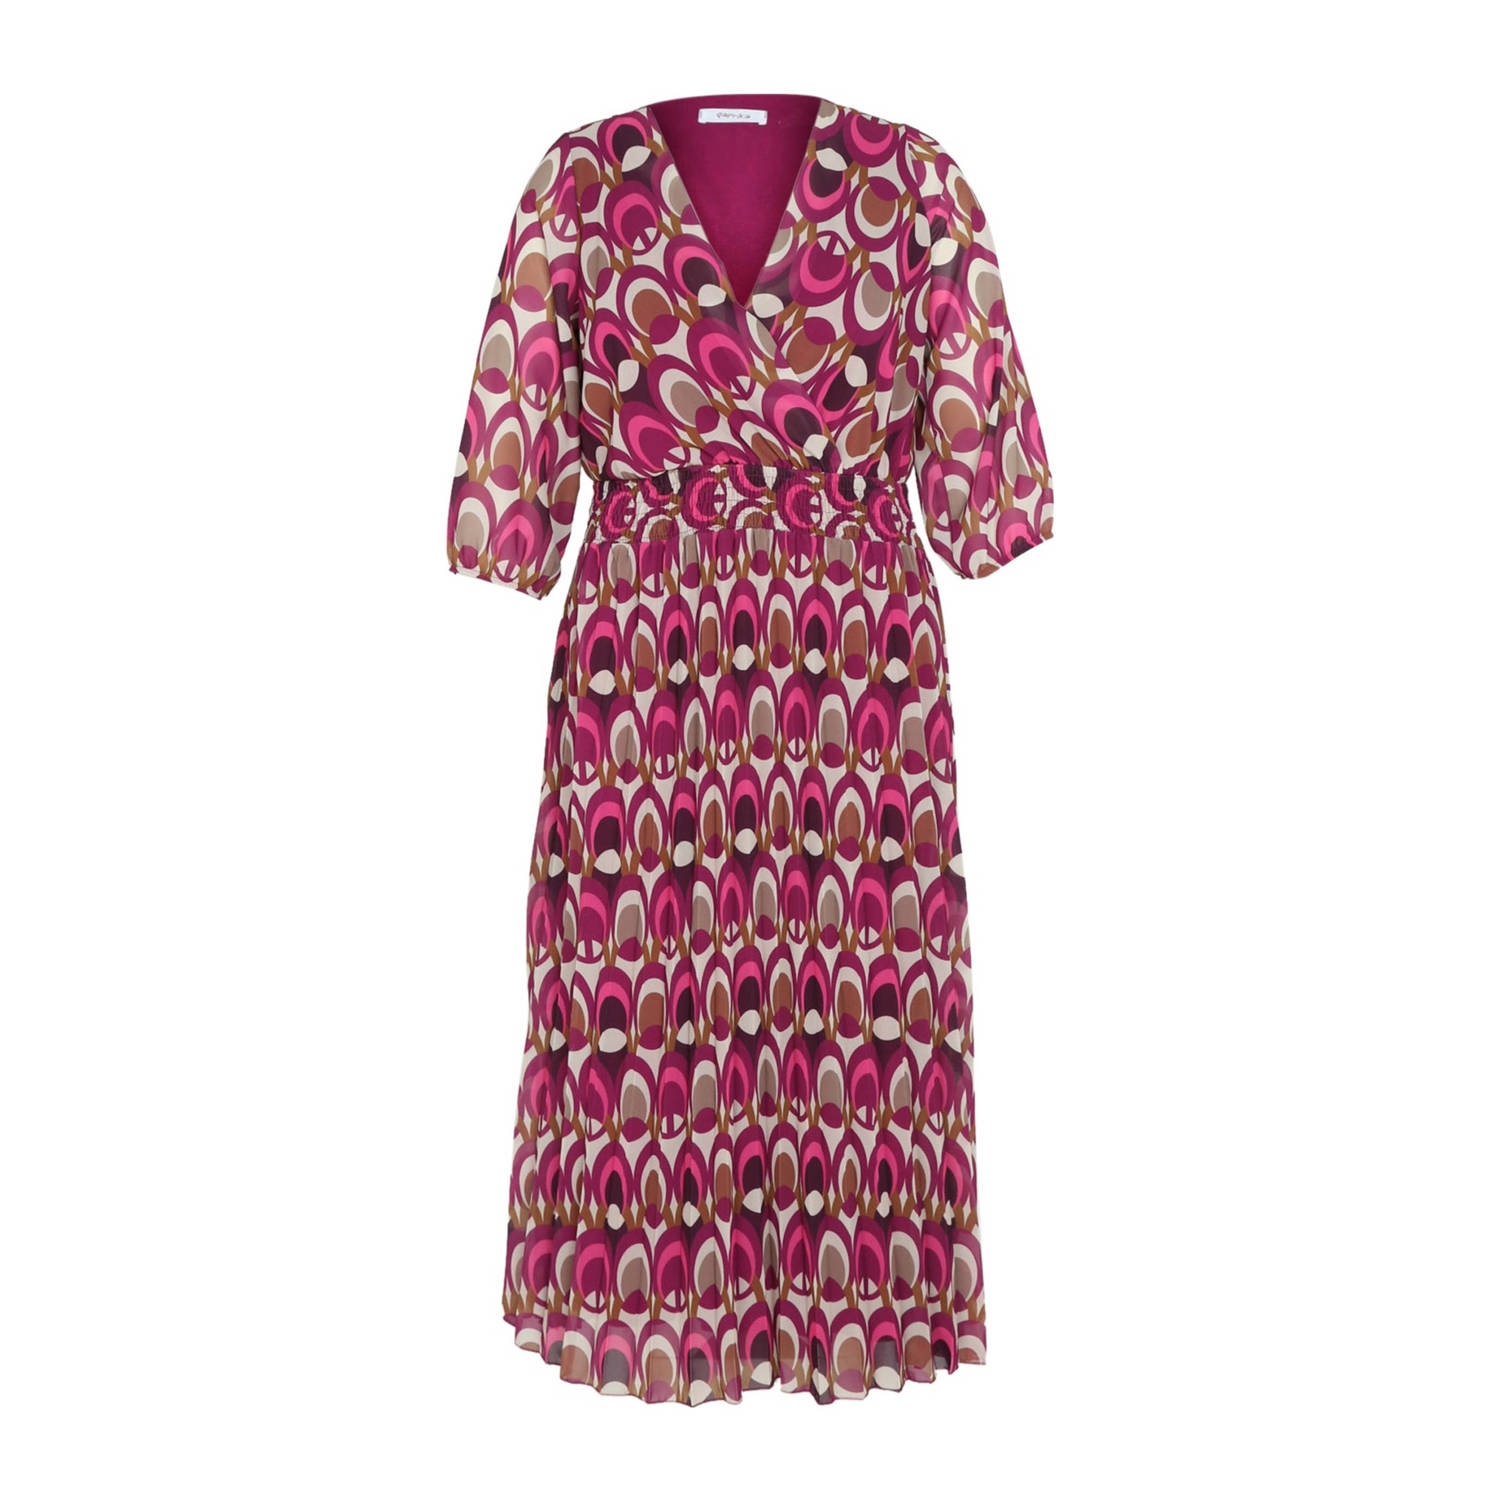 Paprika jurk met all over print paars bruin lichtgrijs